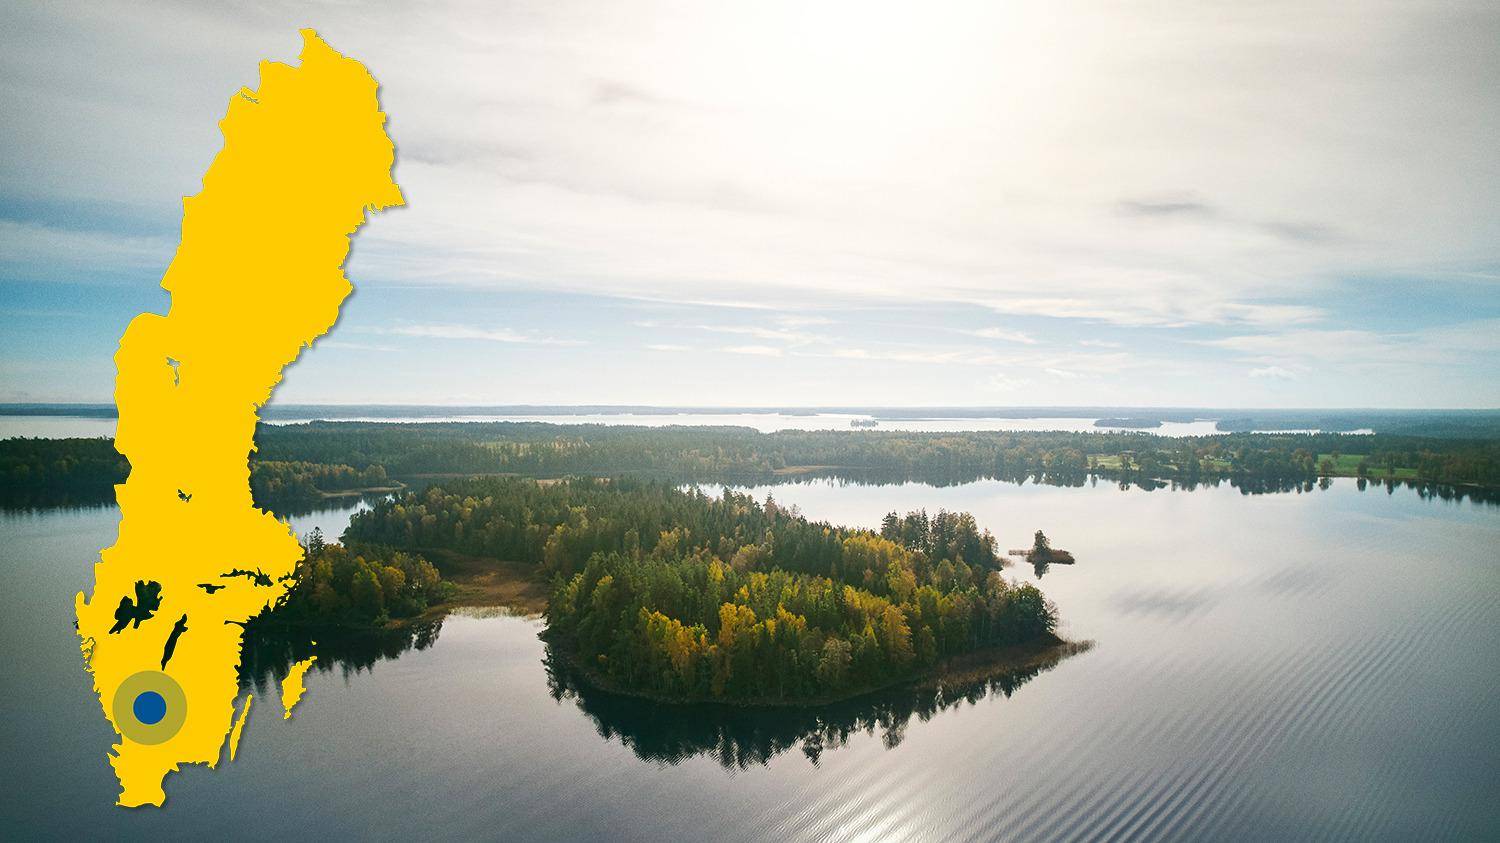 Eine Luftaufnahme des Sees Bolmen und seiner Inseln. Es gibt eine gelbe Karte von Schweden mit einem blauen Punkt, der die Lage des Sees Bolmen markiert.